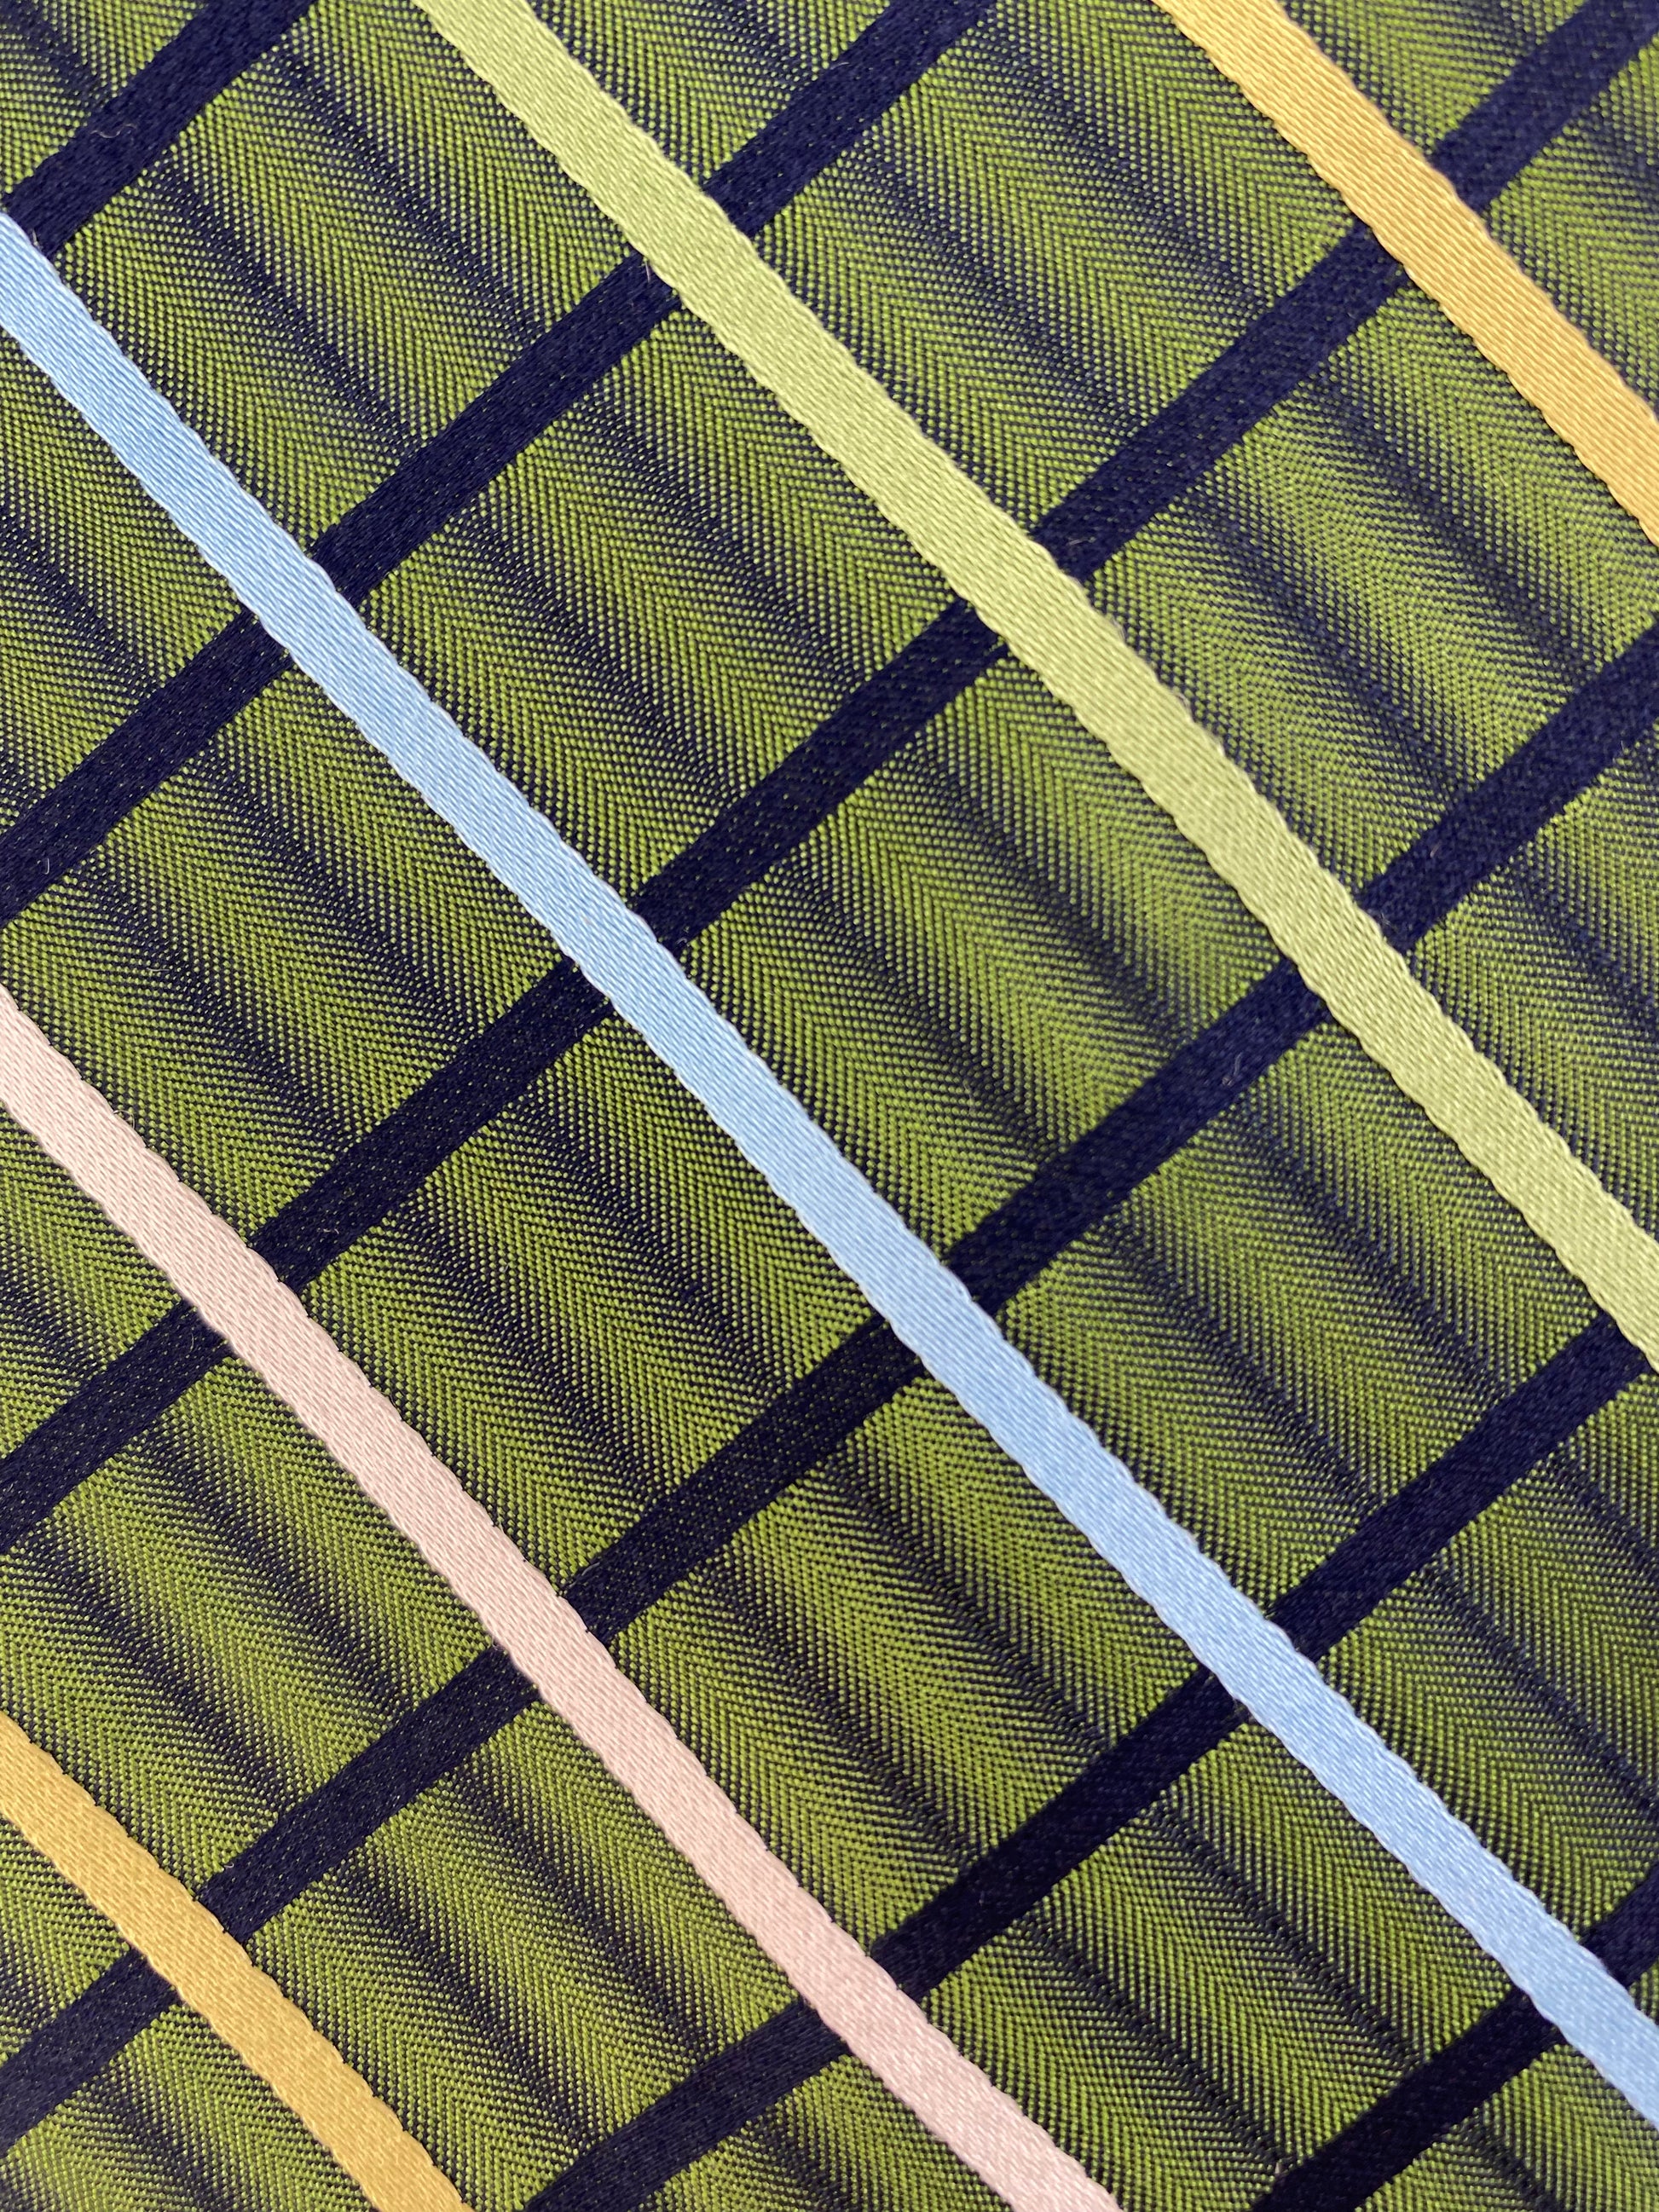 Close-up of: 90s Deadstock Silk Necktie, Men's Vintage Green/ Blue Check Stripe Pattern Tie, NOS